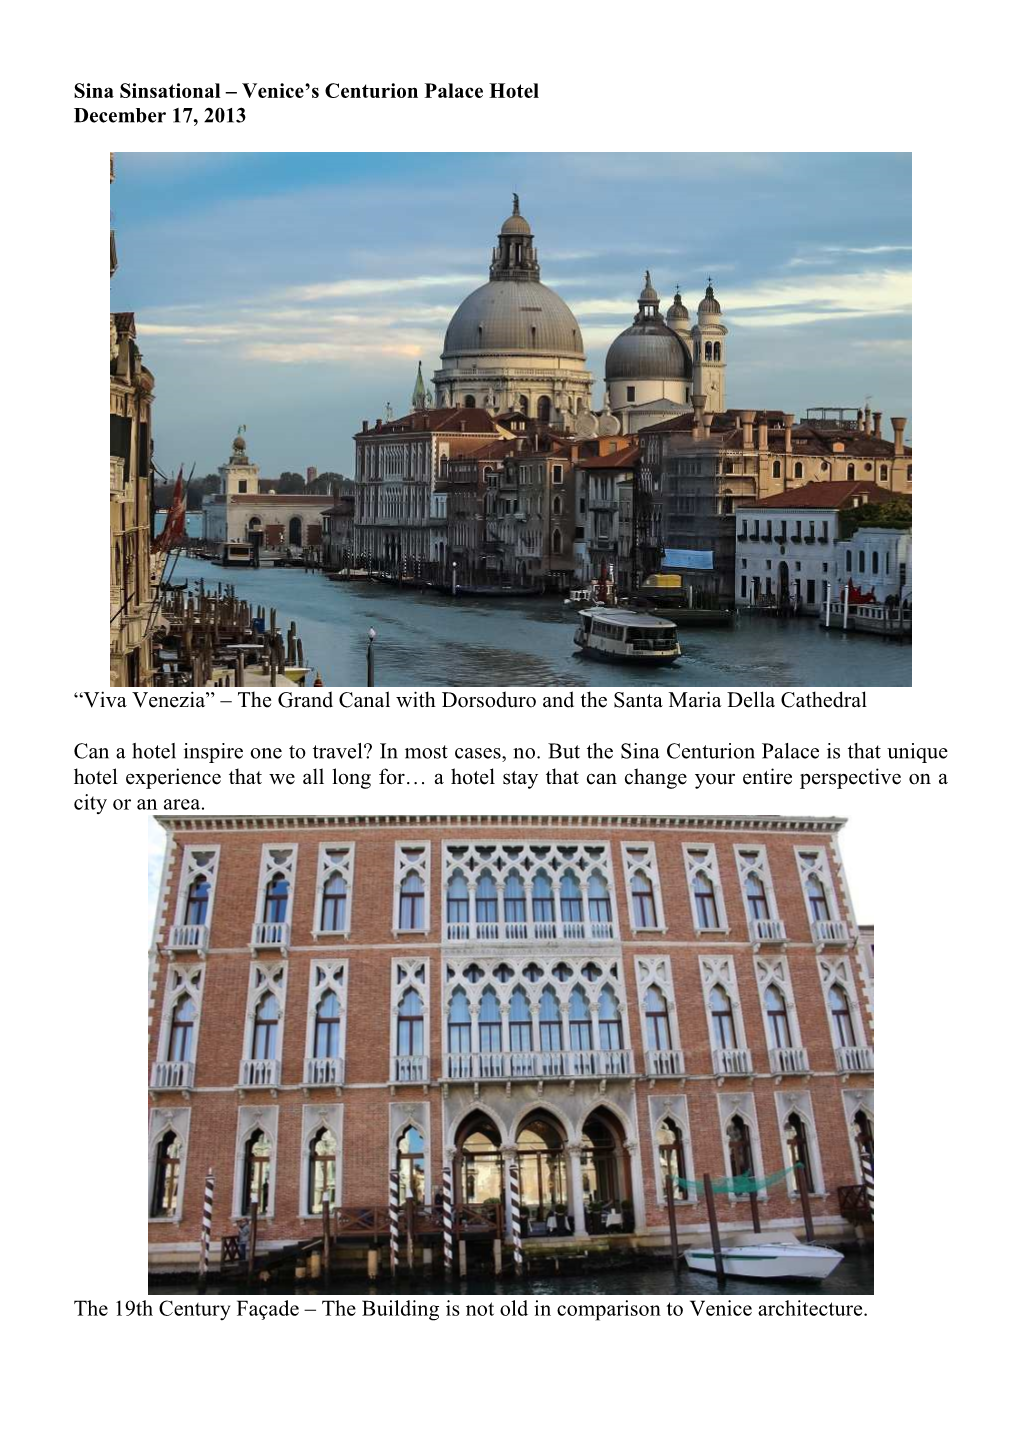 “Viva Venezia” – the Grand Canal with Dorsoduro and the Santa Maria Della Cathedral